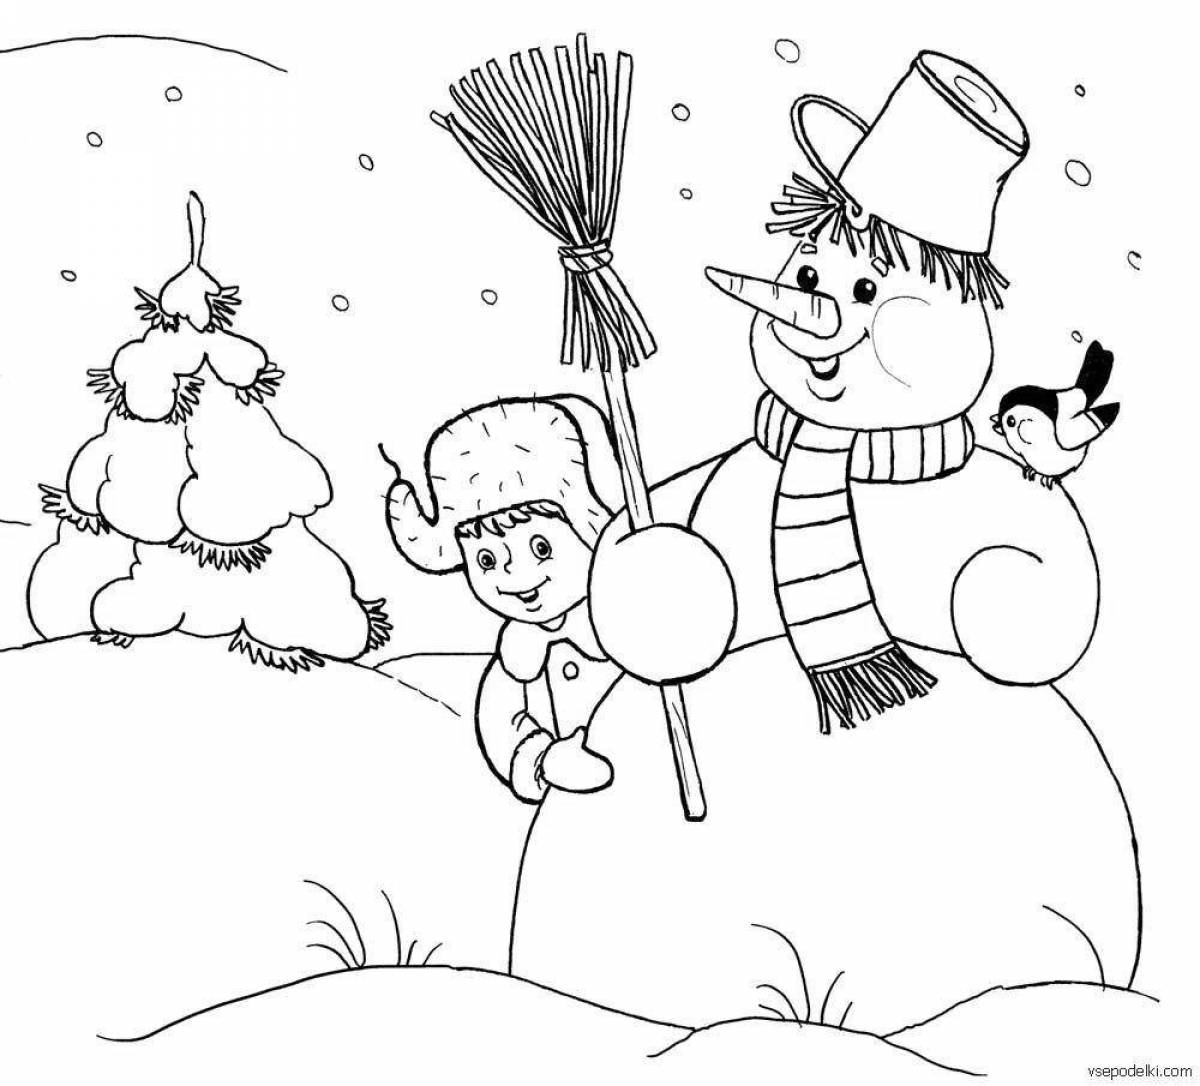 Веселый снежок раскраски для детей